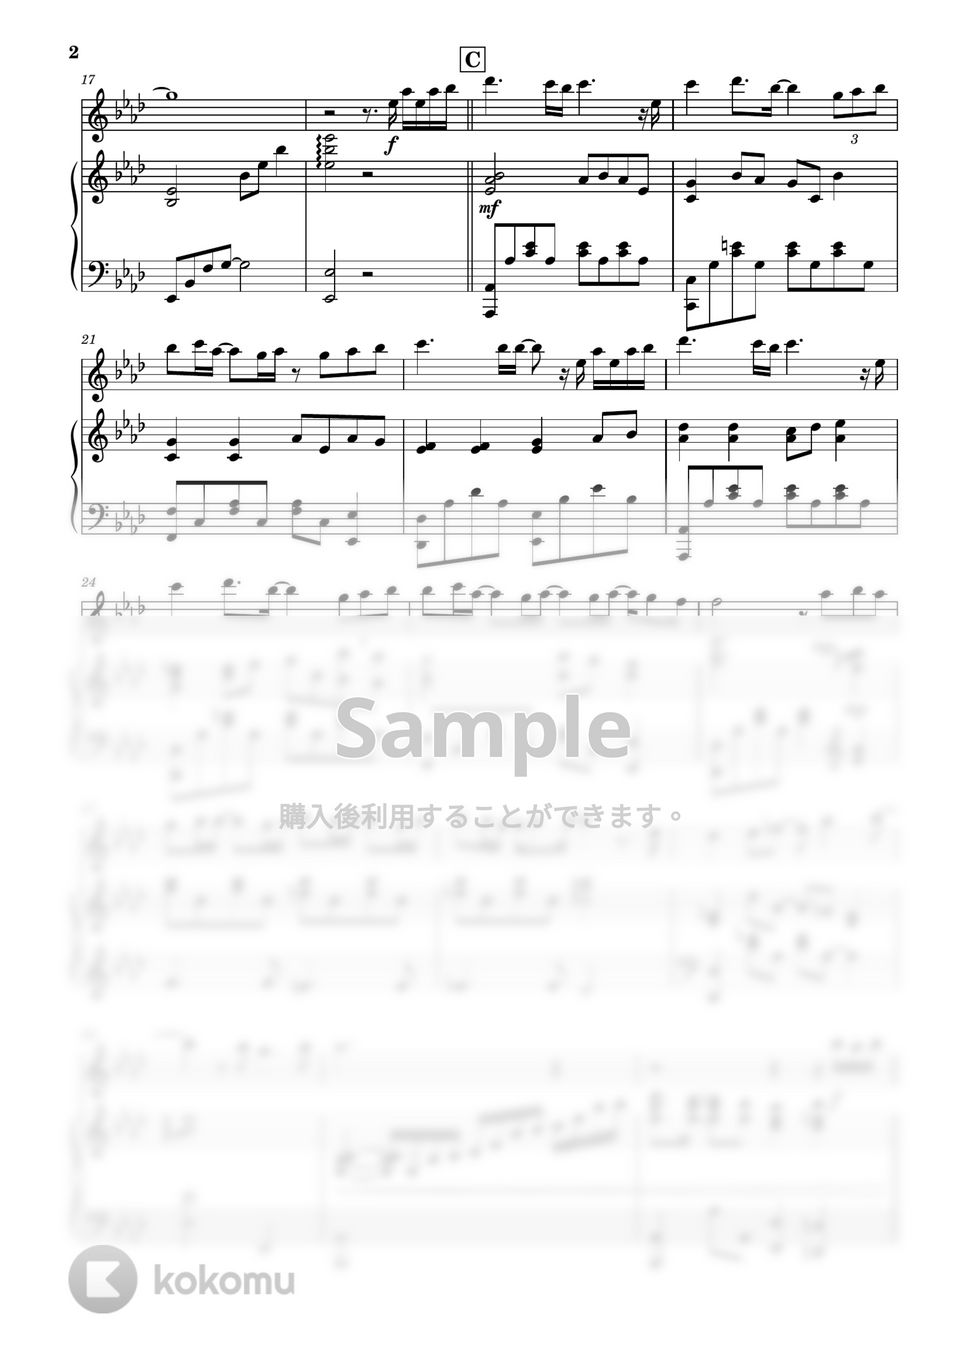 Uru - 心得 (フルート&ピアノ伴奏) by PiaFlu